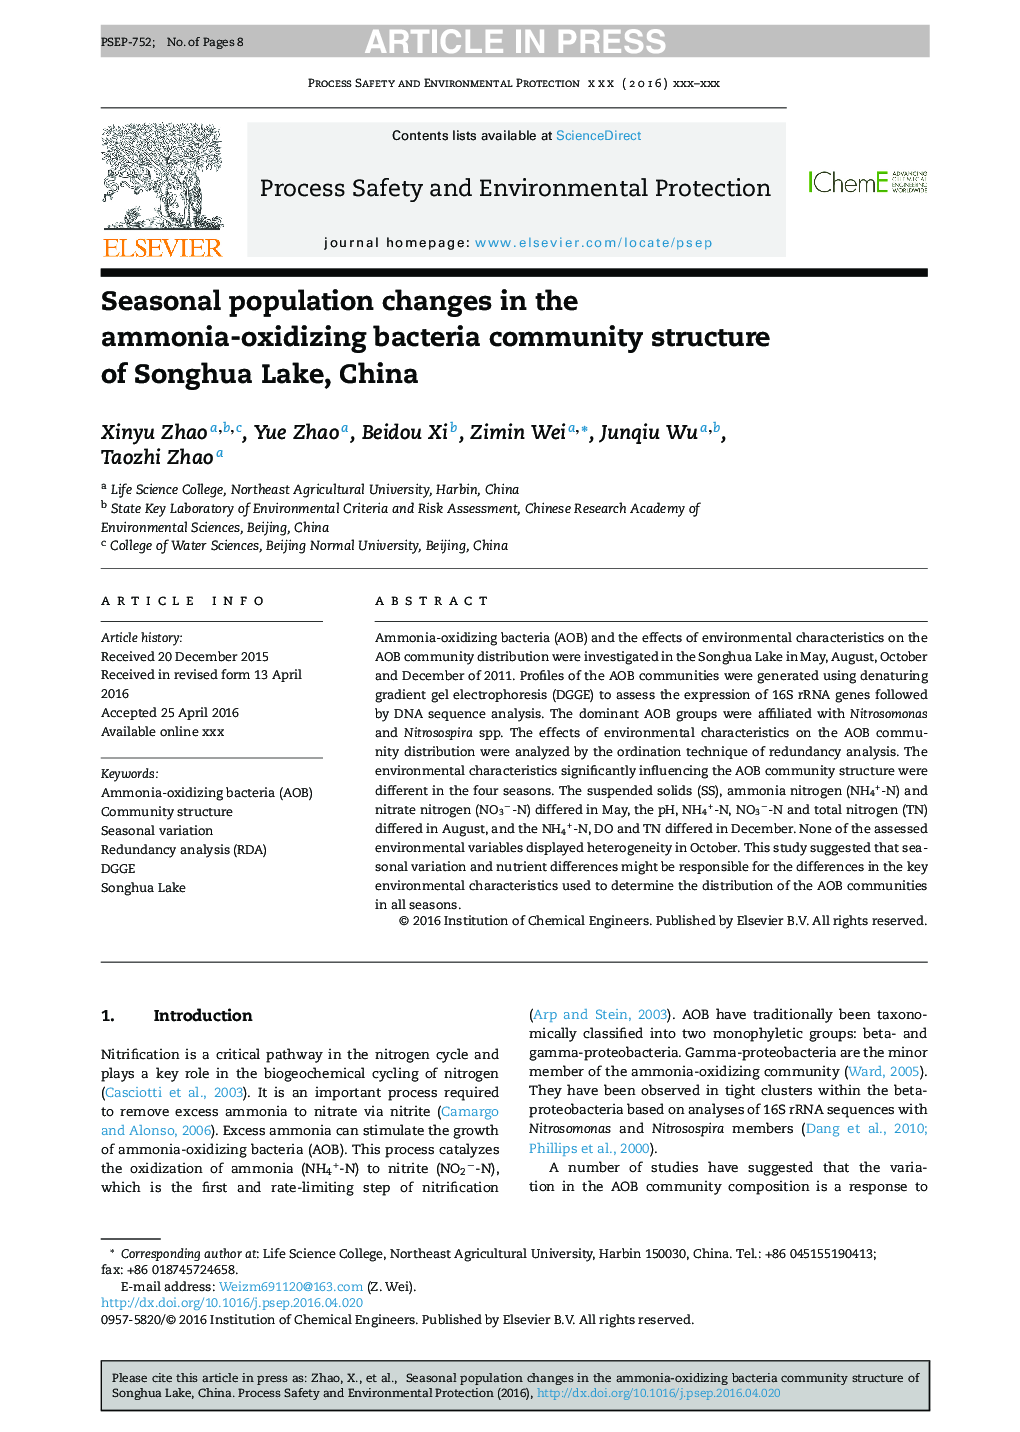 تغییر فصلی جمعیت در ساختار جامعه باکتری های اکسید کننده آمونیاک دریاچه سونووا، چین 